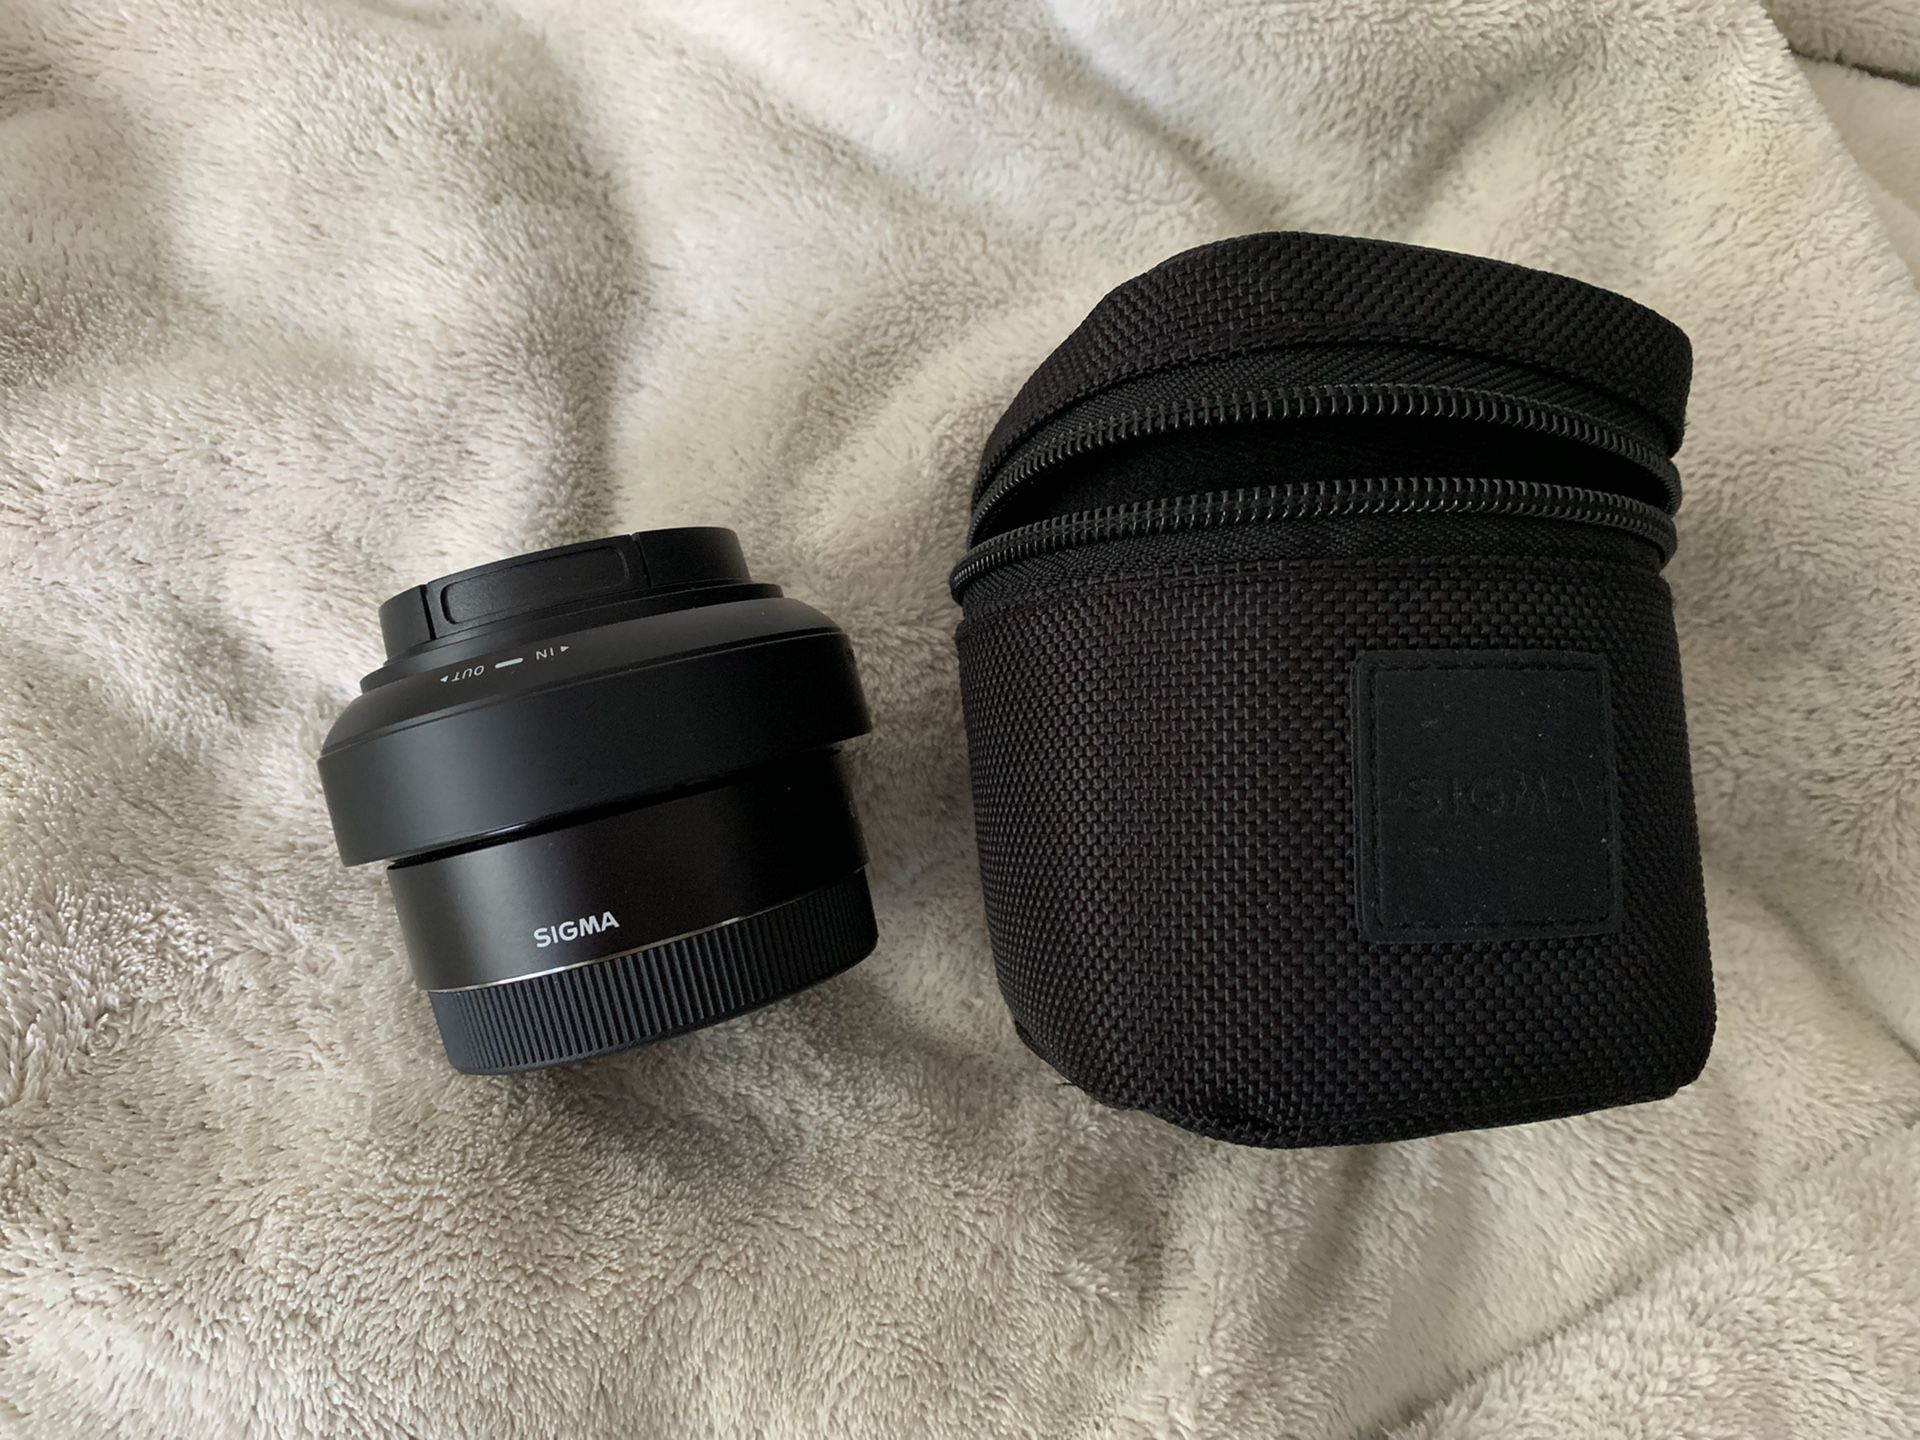 Sony e mount Sigma 30mm 2.8 camera lens